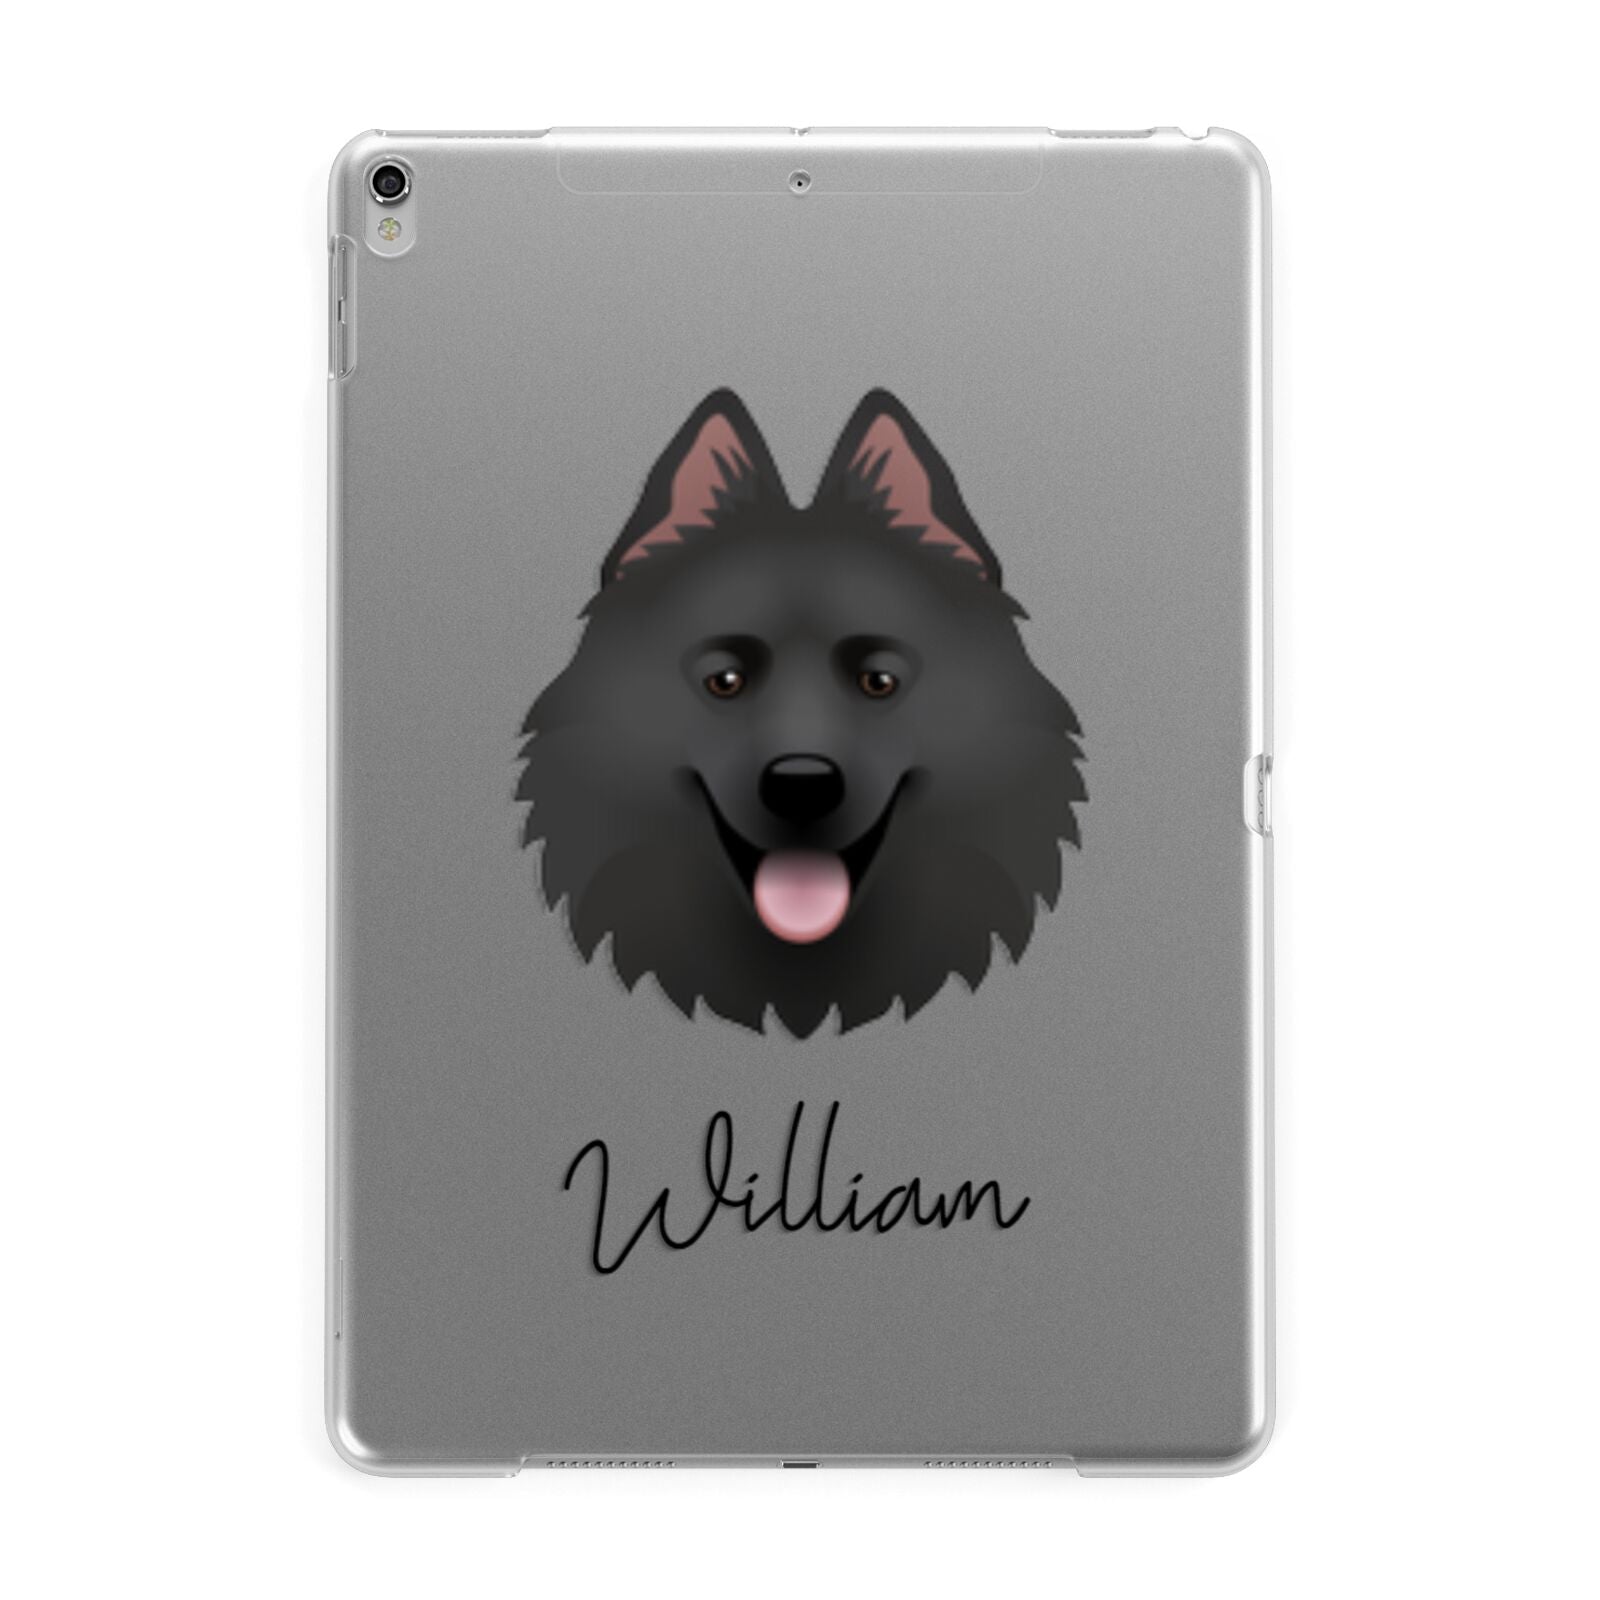 Samoyed Personalised Apple iPad Silver Case